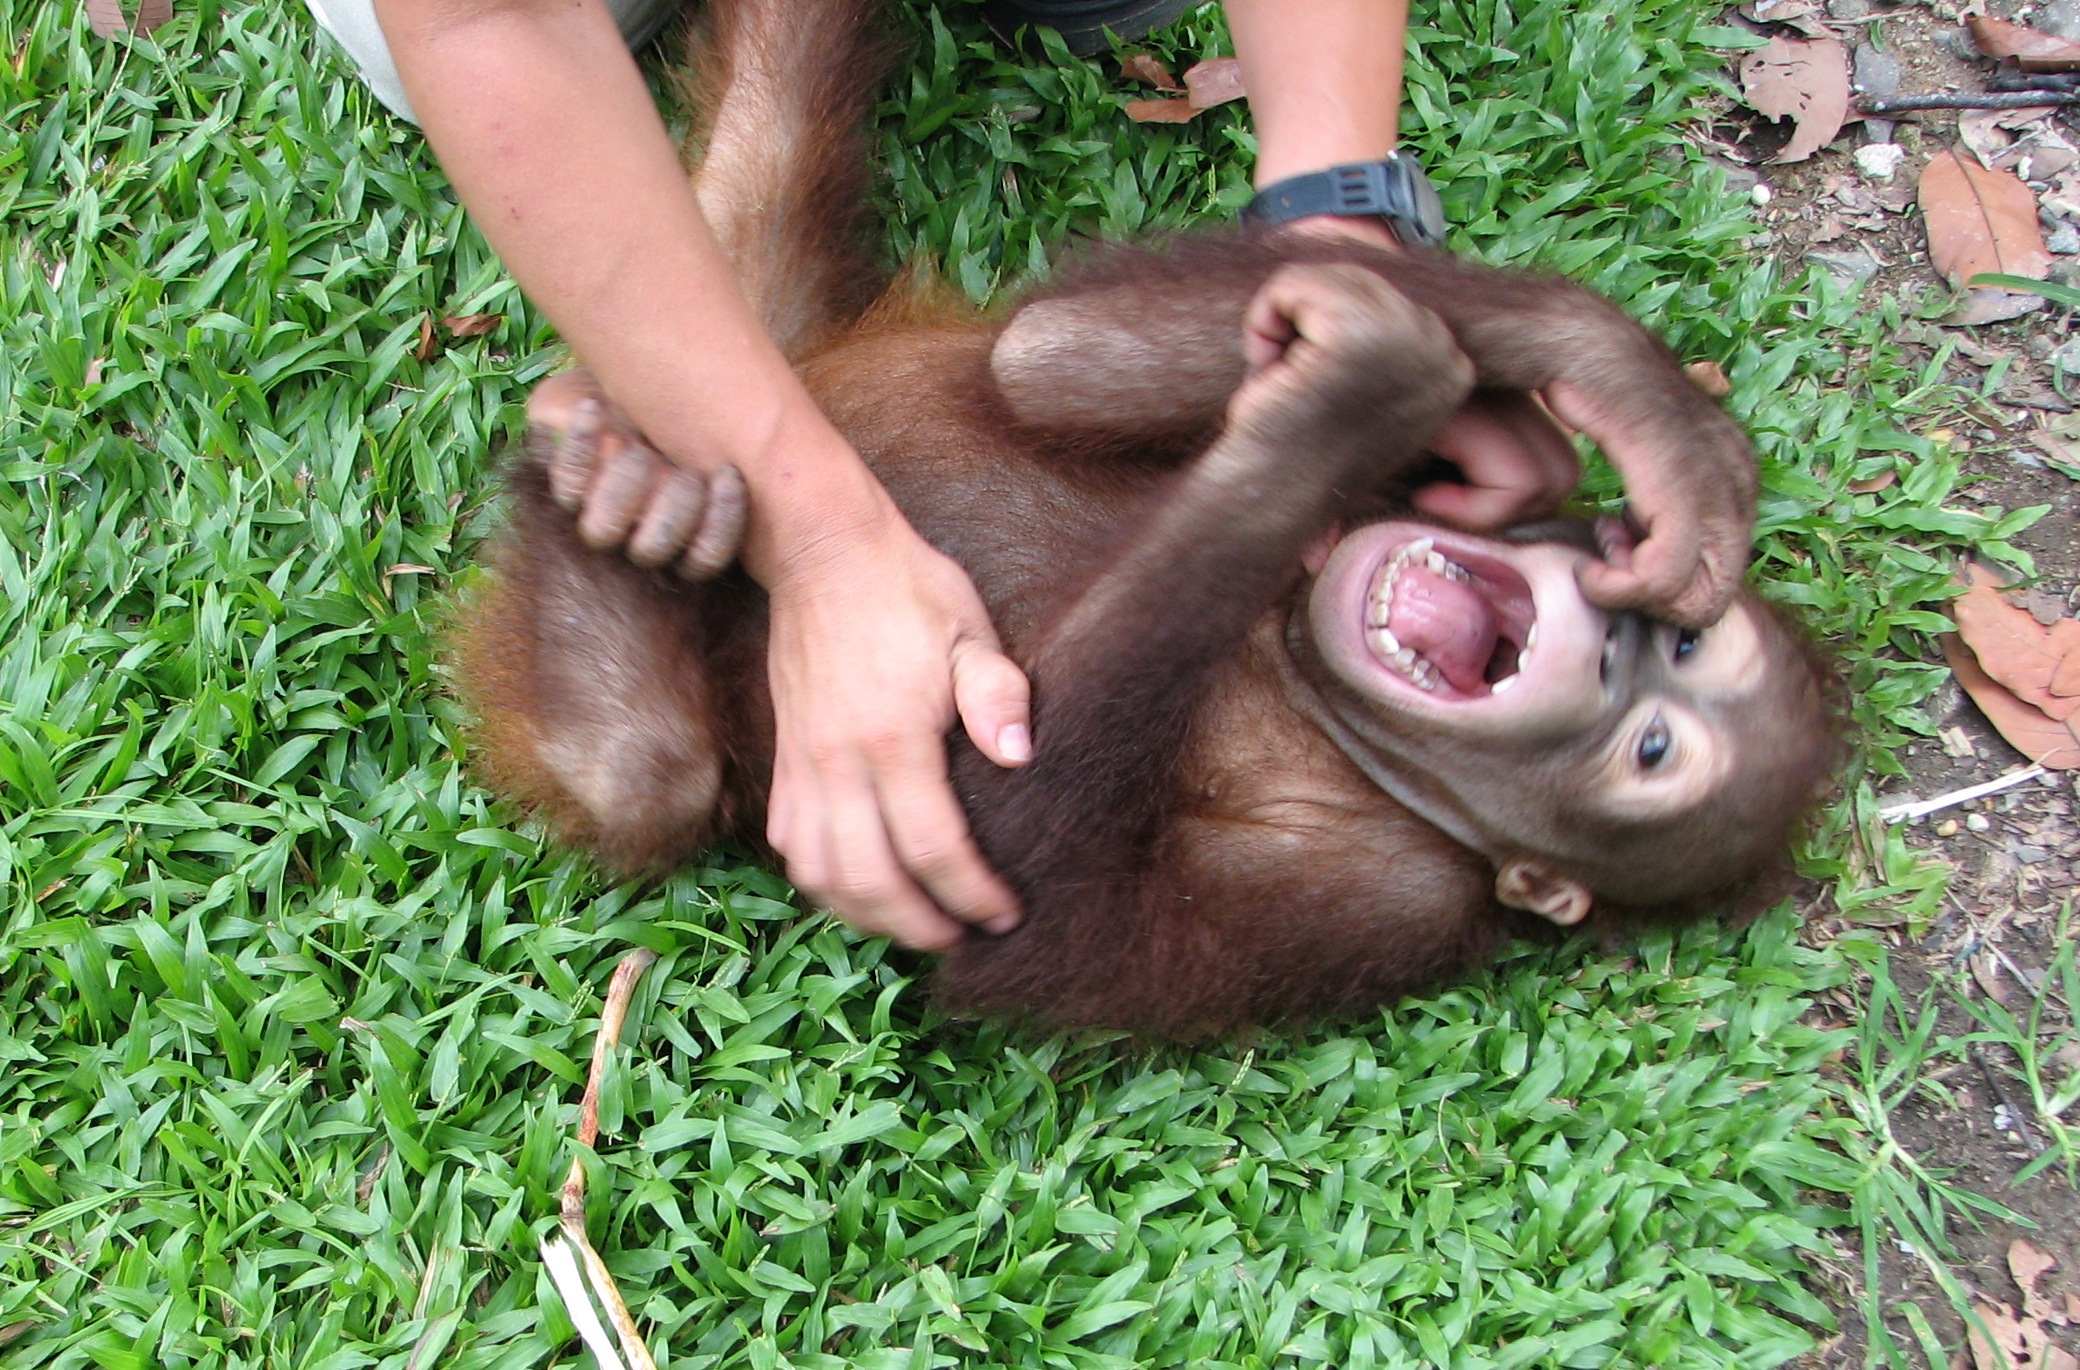 L'orangutan "Naru" mentre le fanno il solletico (crediti: Davila Ross)